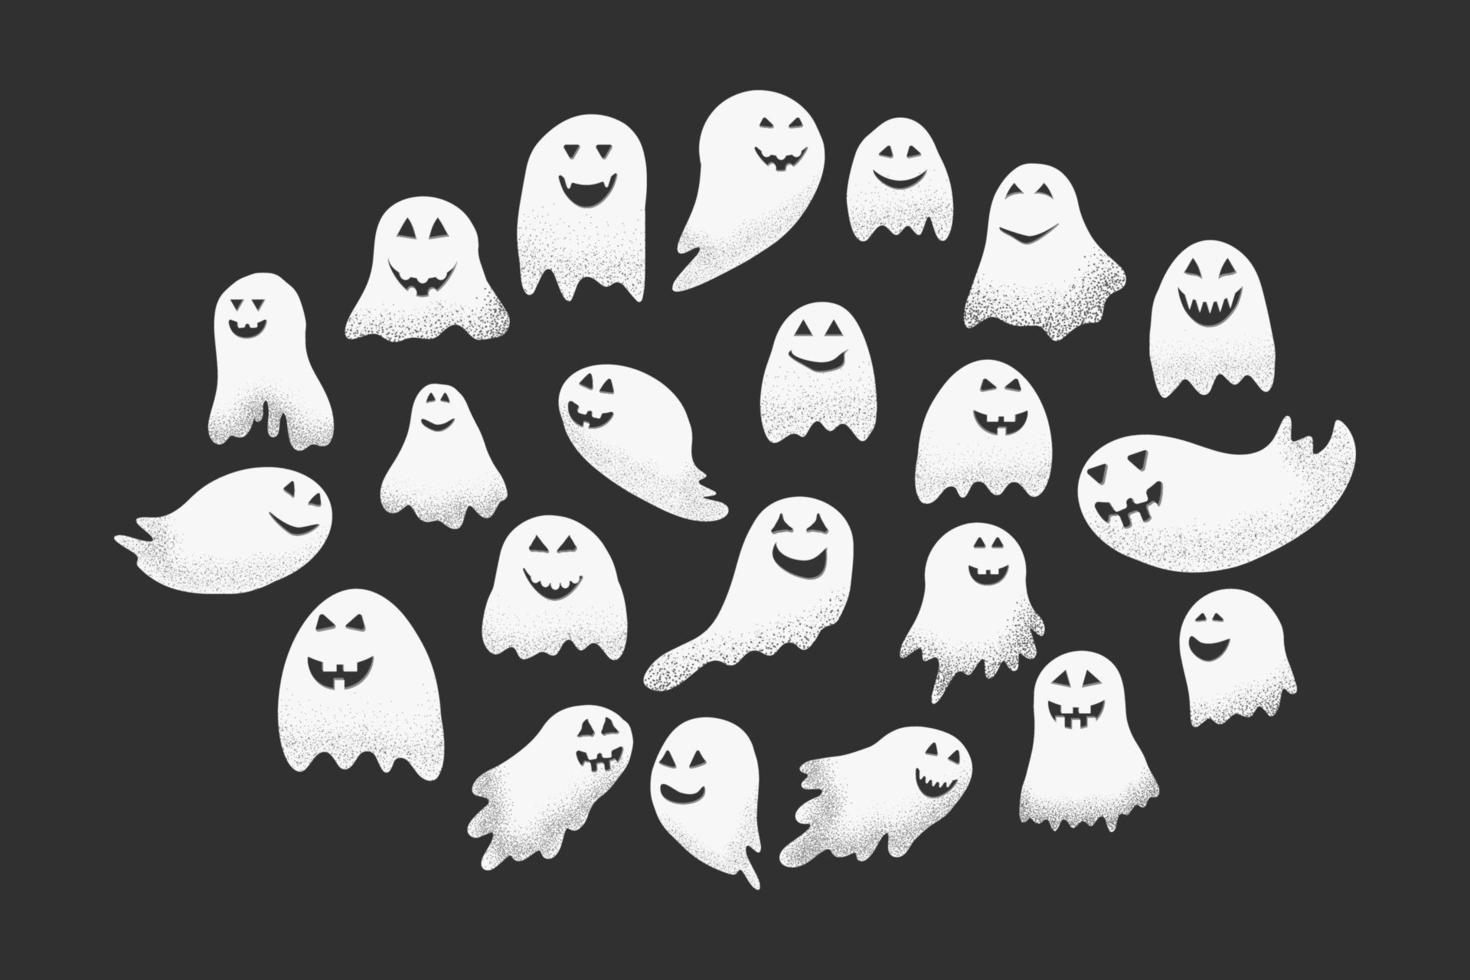 fantasmas rostos assustadores e engraçados para o dia das bruxas. 12060978  Vetor no Vecteezy